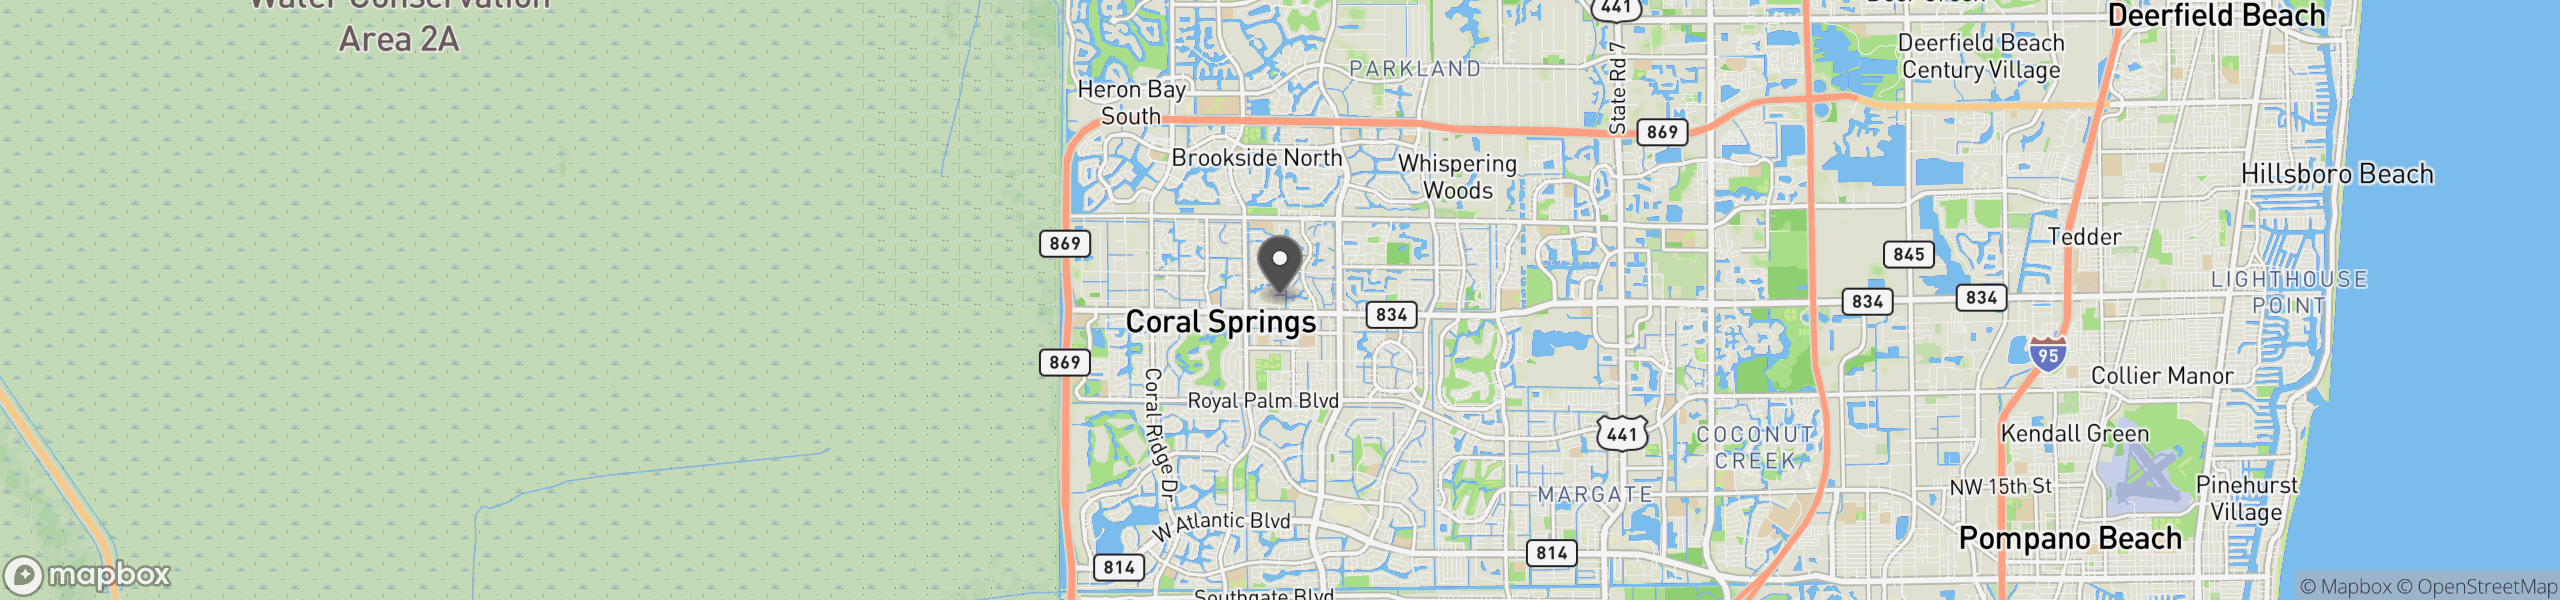 Coral Springs, FL 33065